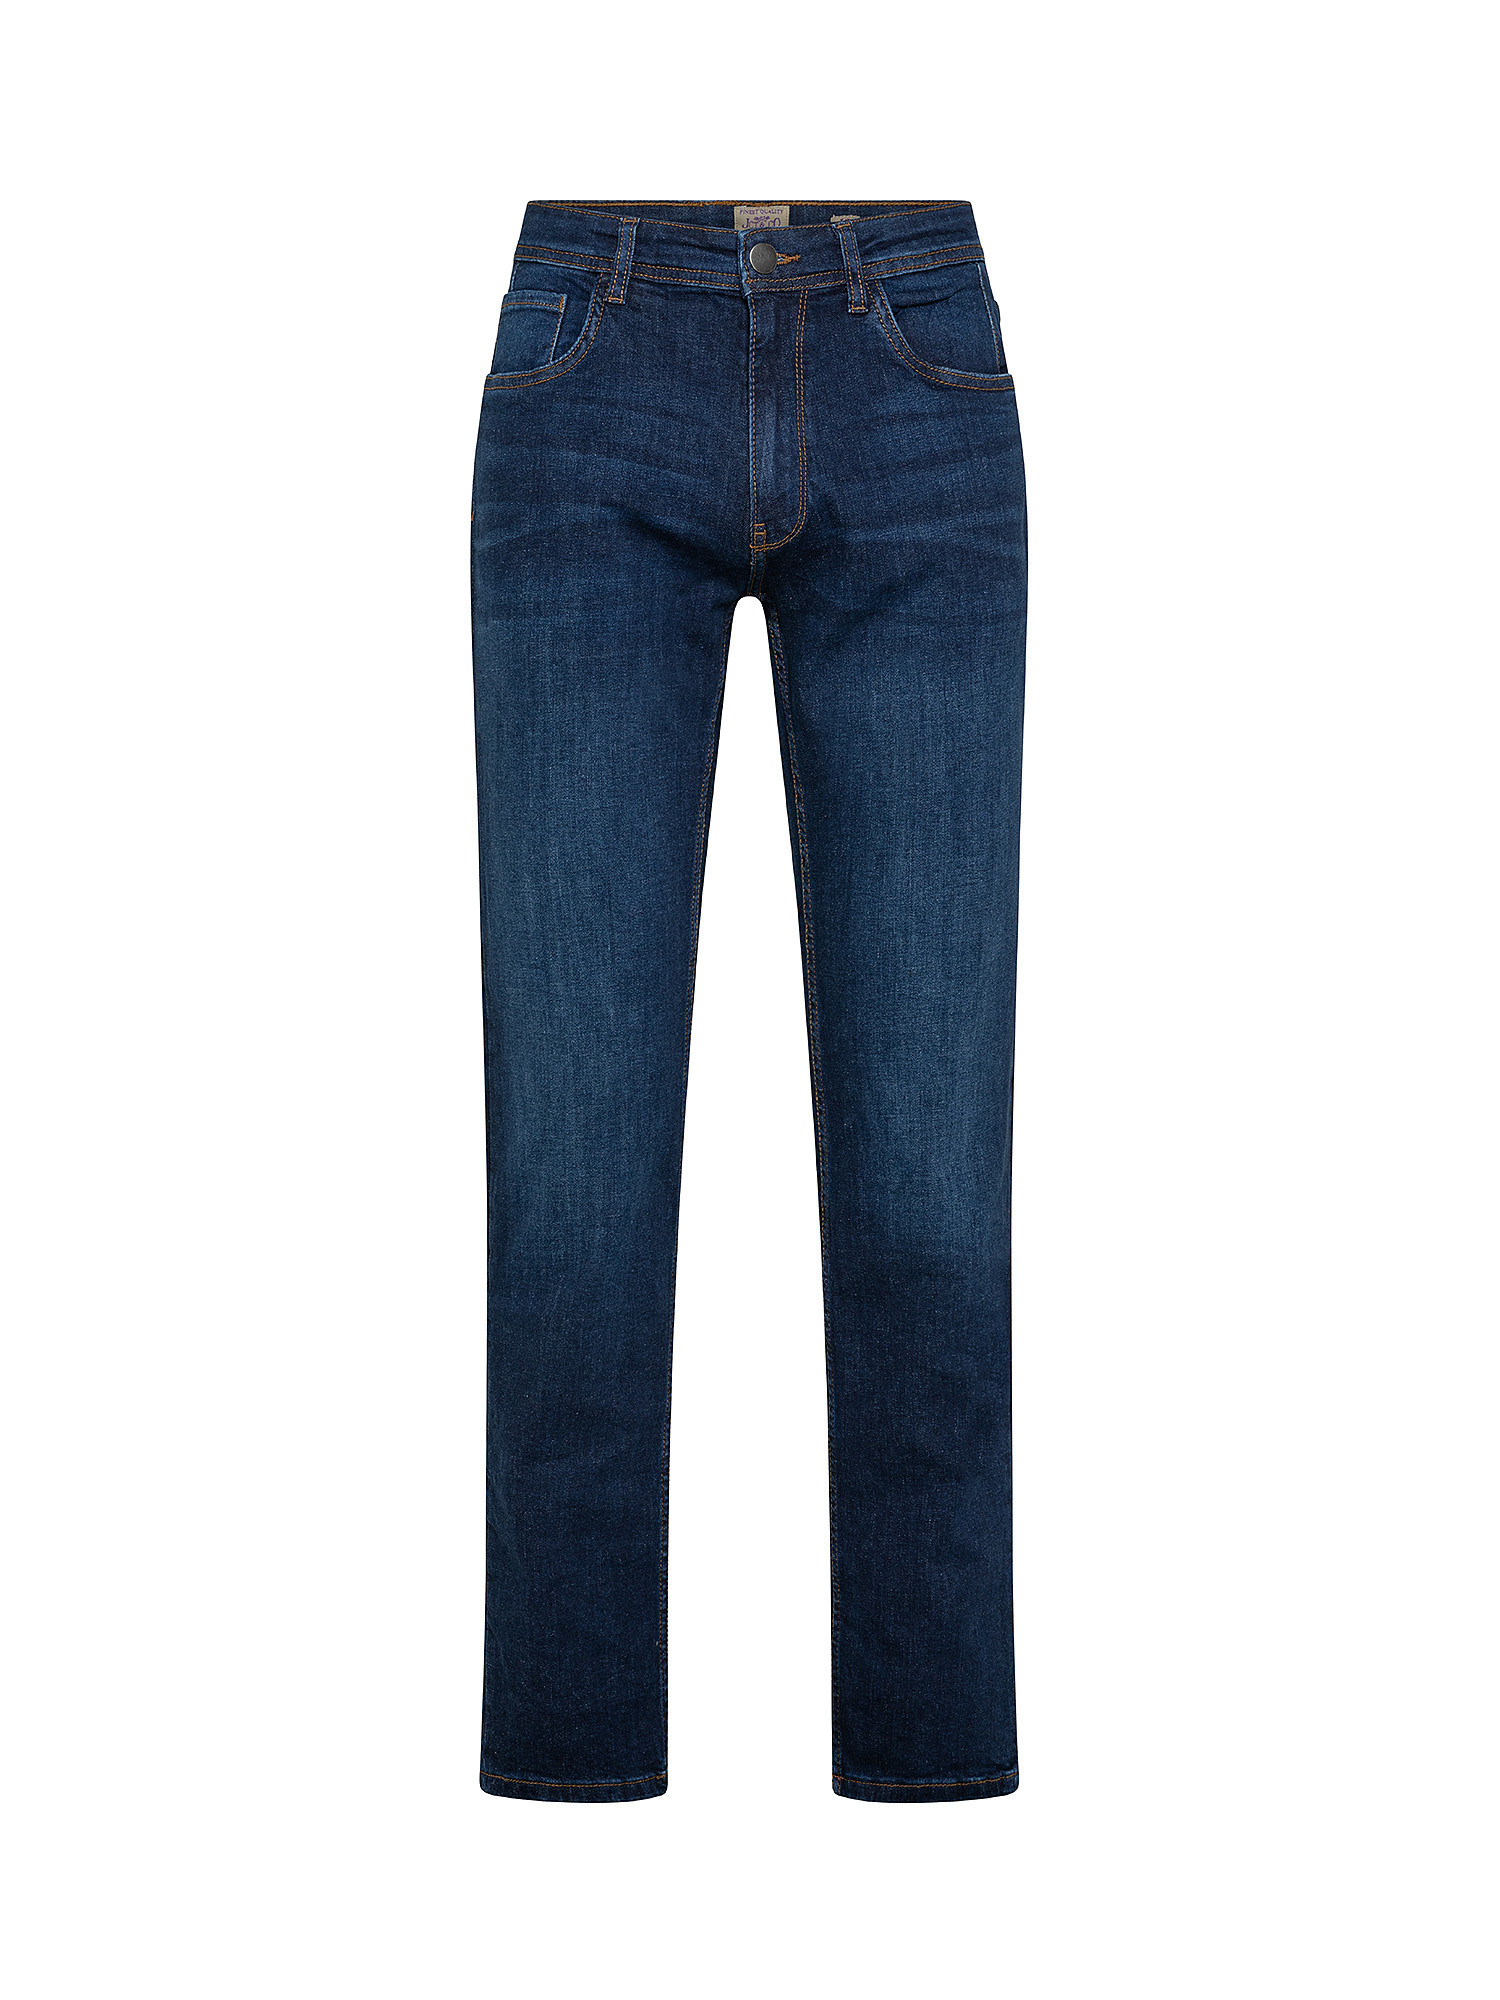 5-pocket slim stretch cotton jeans, Dark Blue, large image number 0